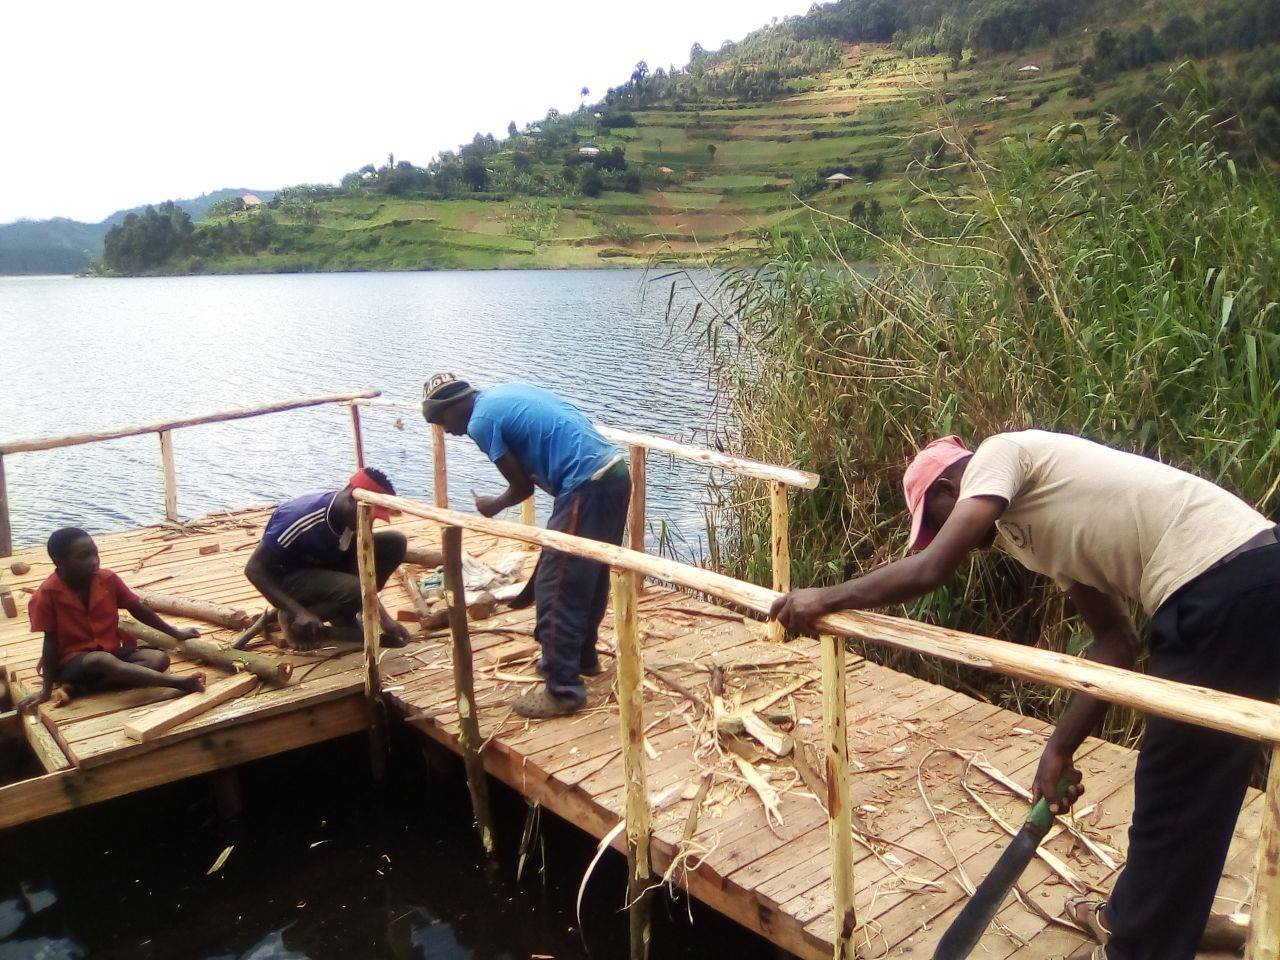 Kikötőt az ugandai gyerekeknek! - Docks for children in Uganda!